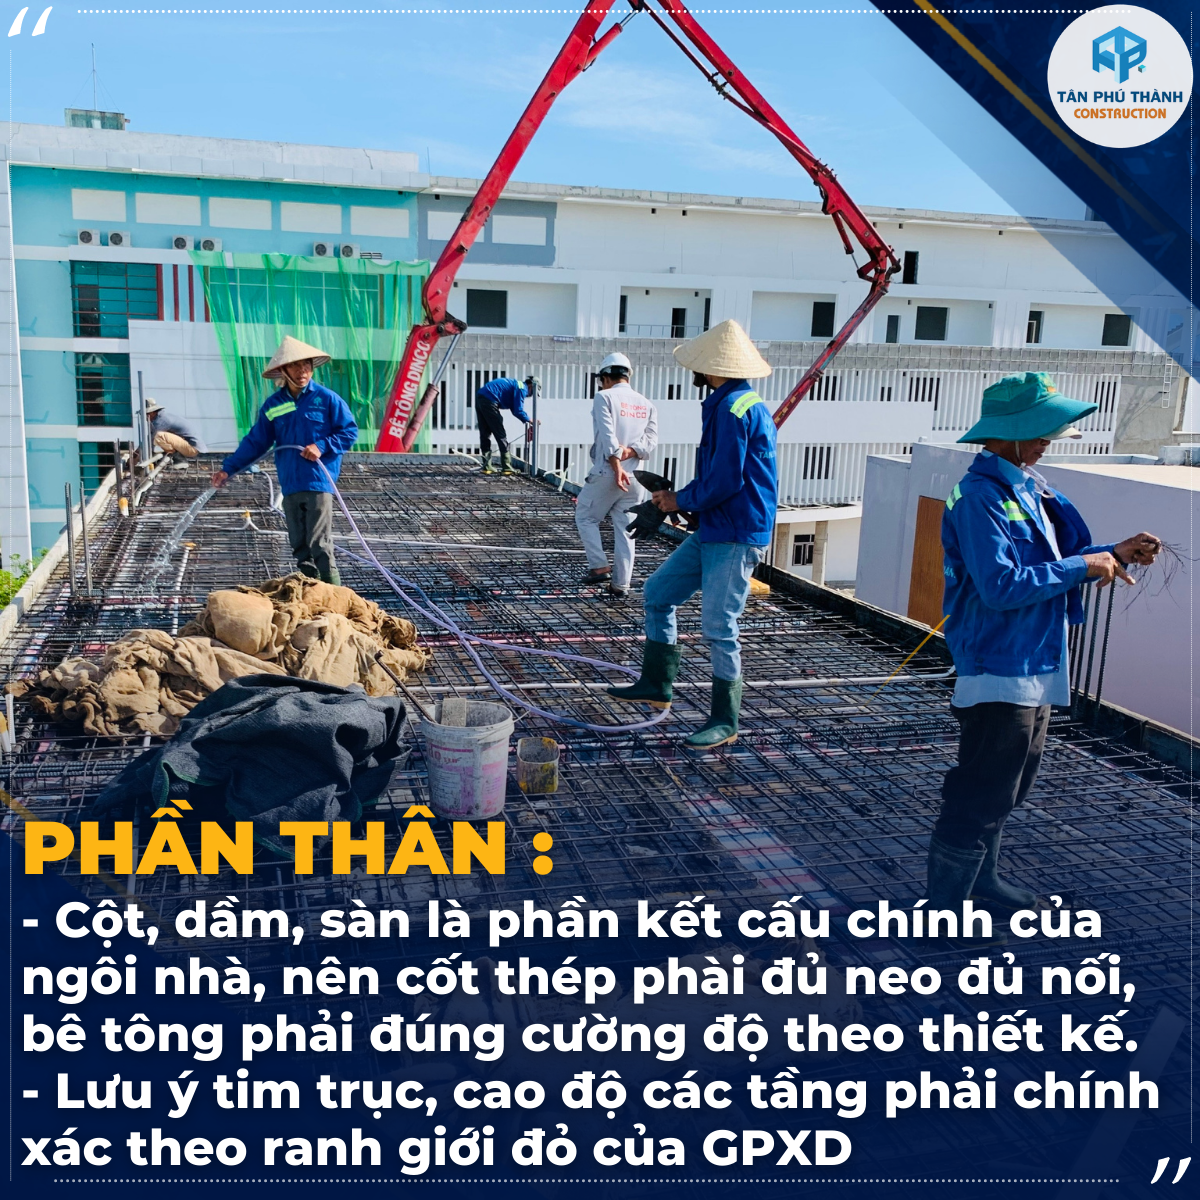 TÂN PHÚ THÀNH đơn vị thi công xây nhà trọn gói uy tín Đà Nẵng